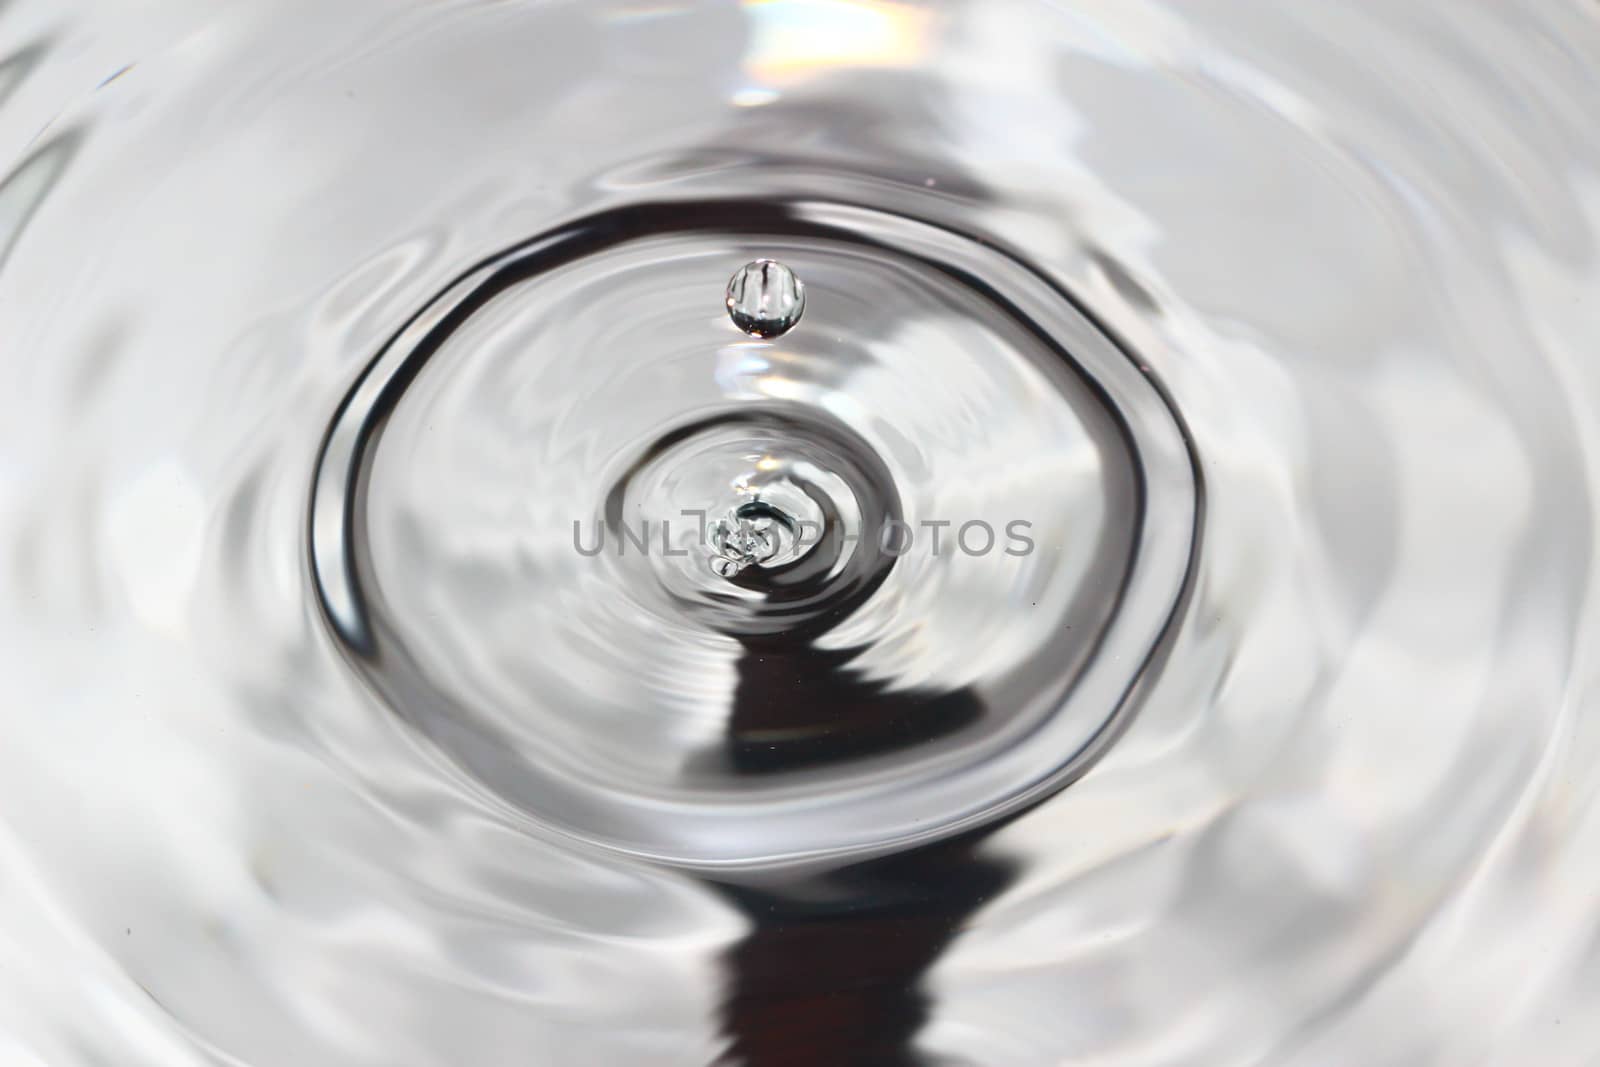 Water drop close up